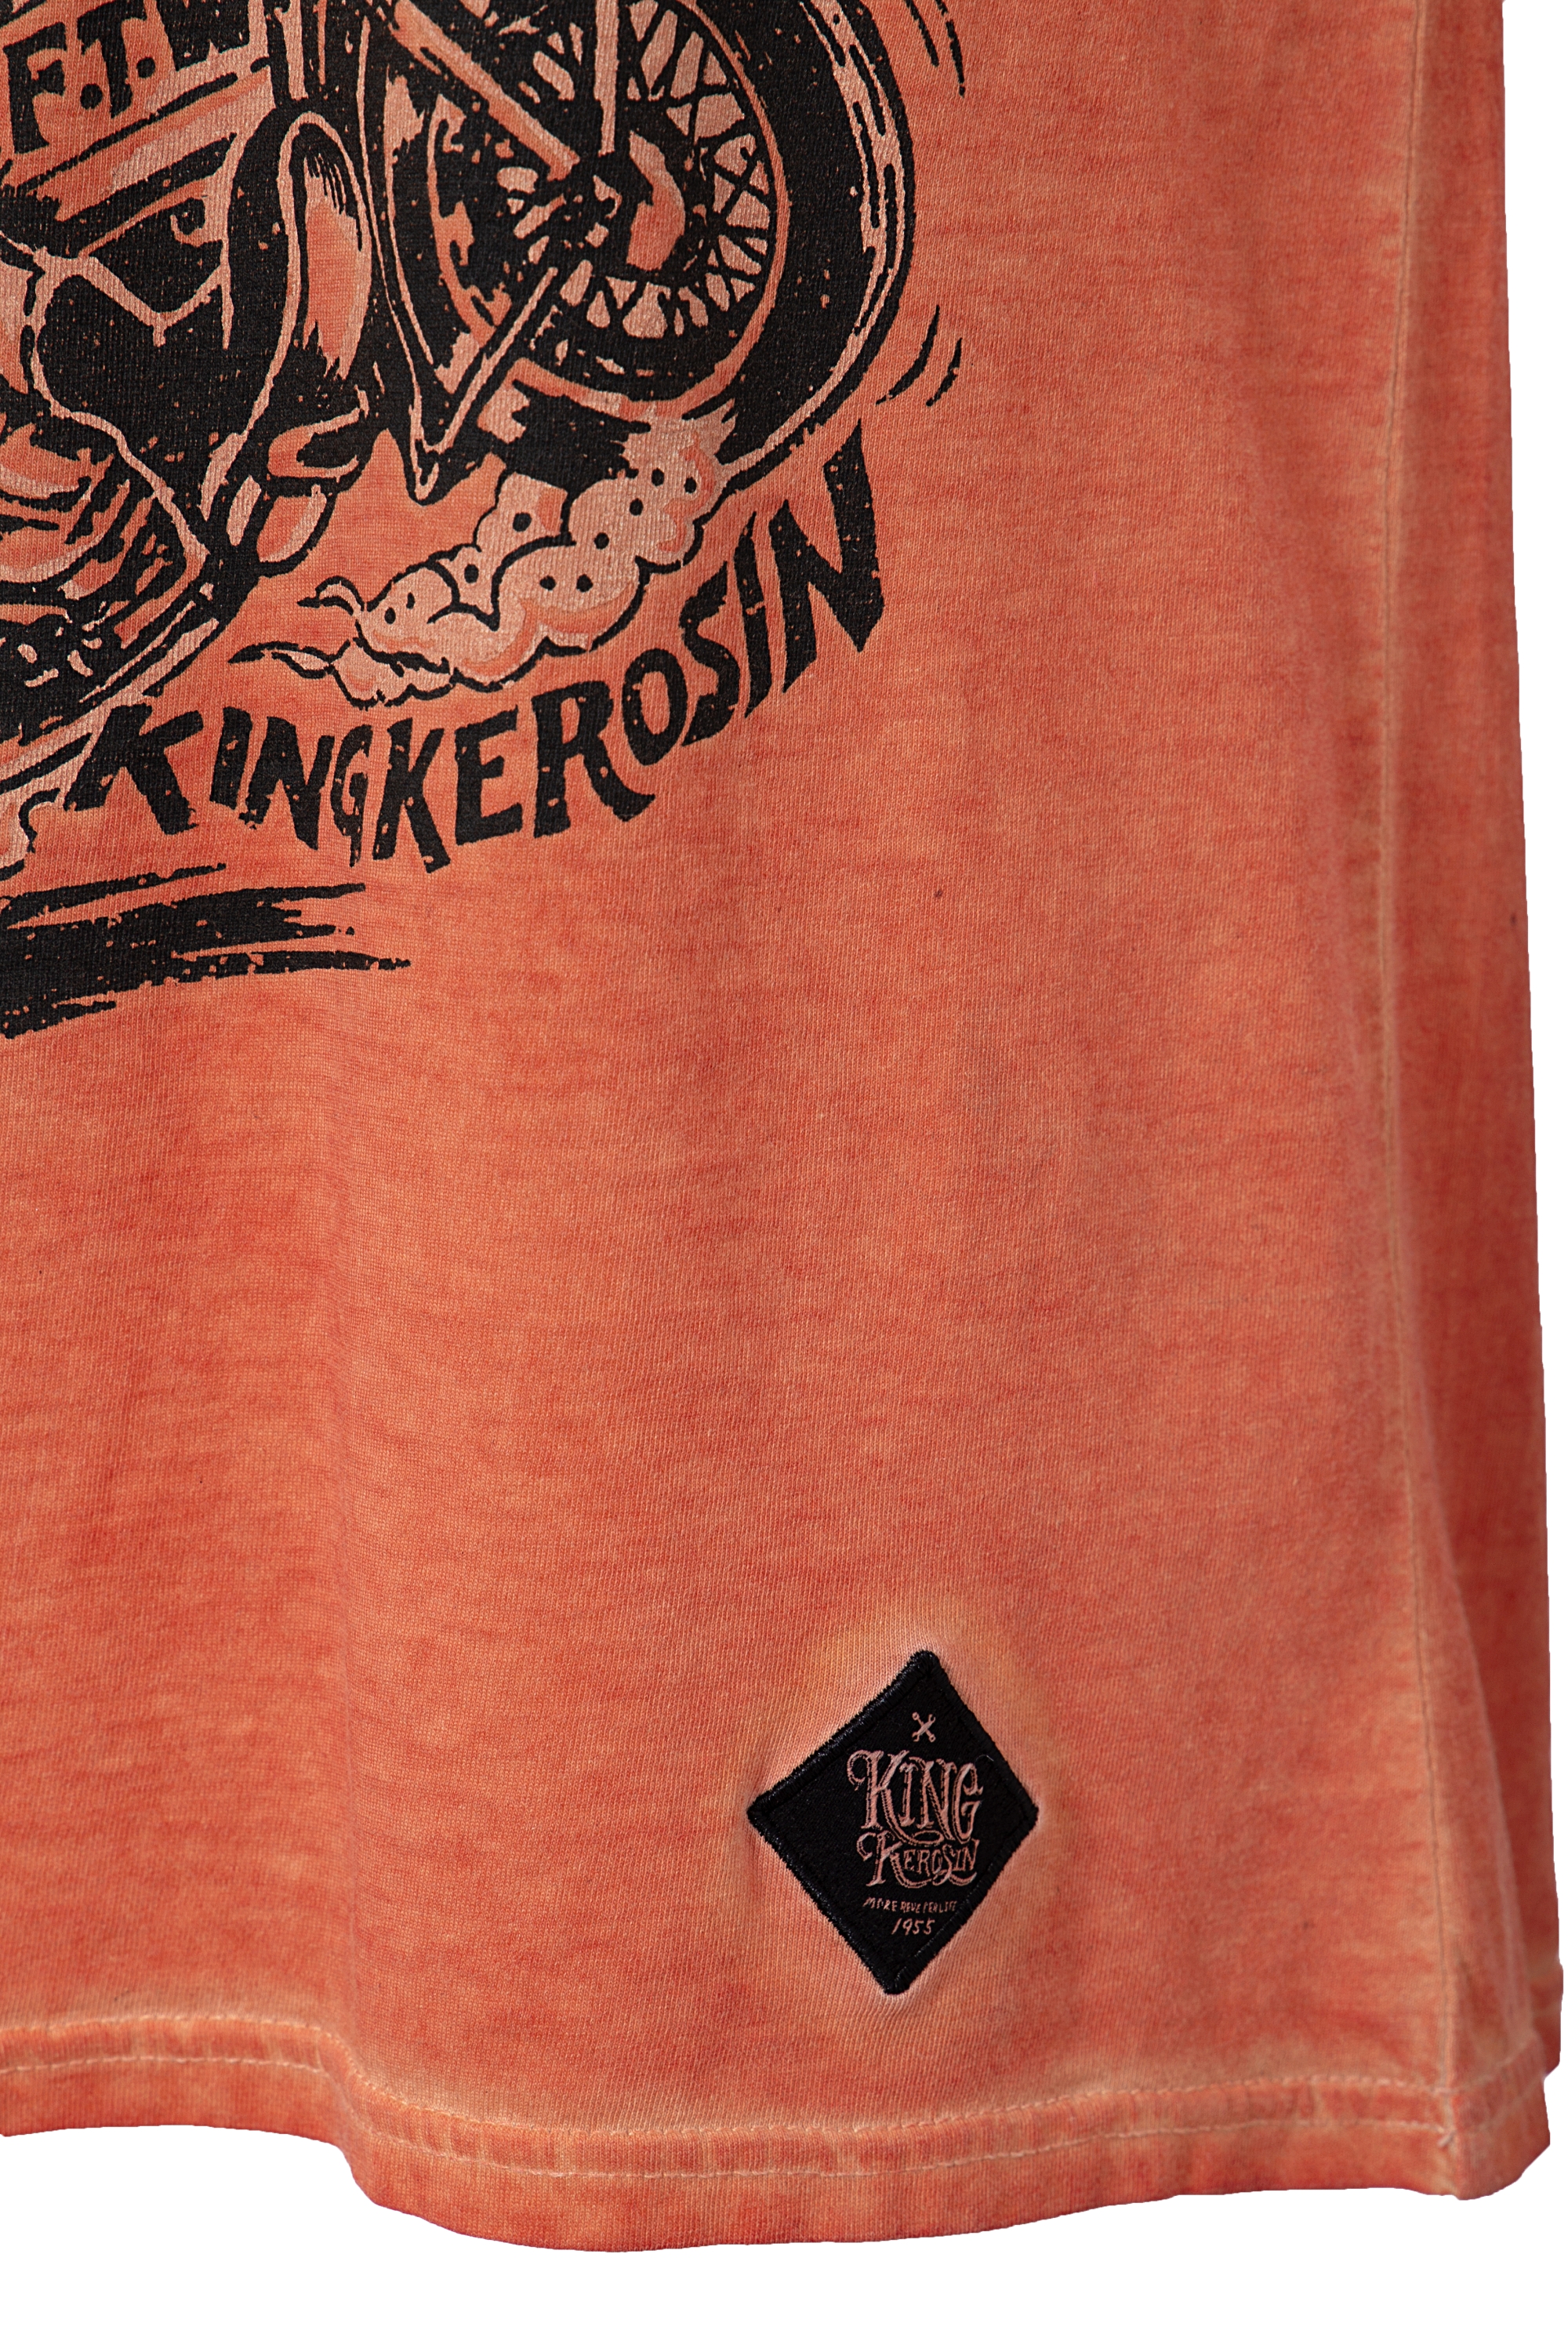 King Kerosin T-Shirt - Motorpsycho - Orange XXL